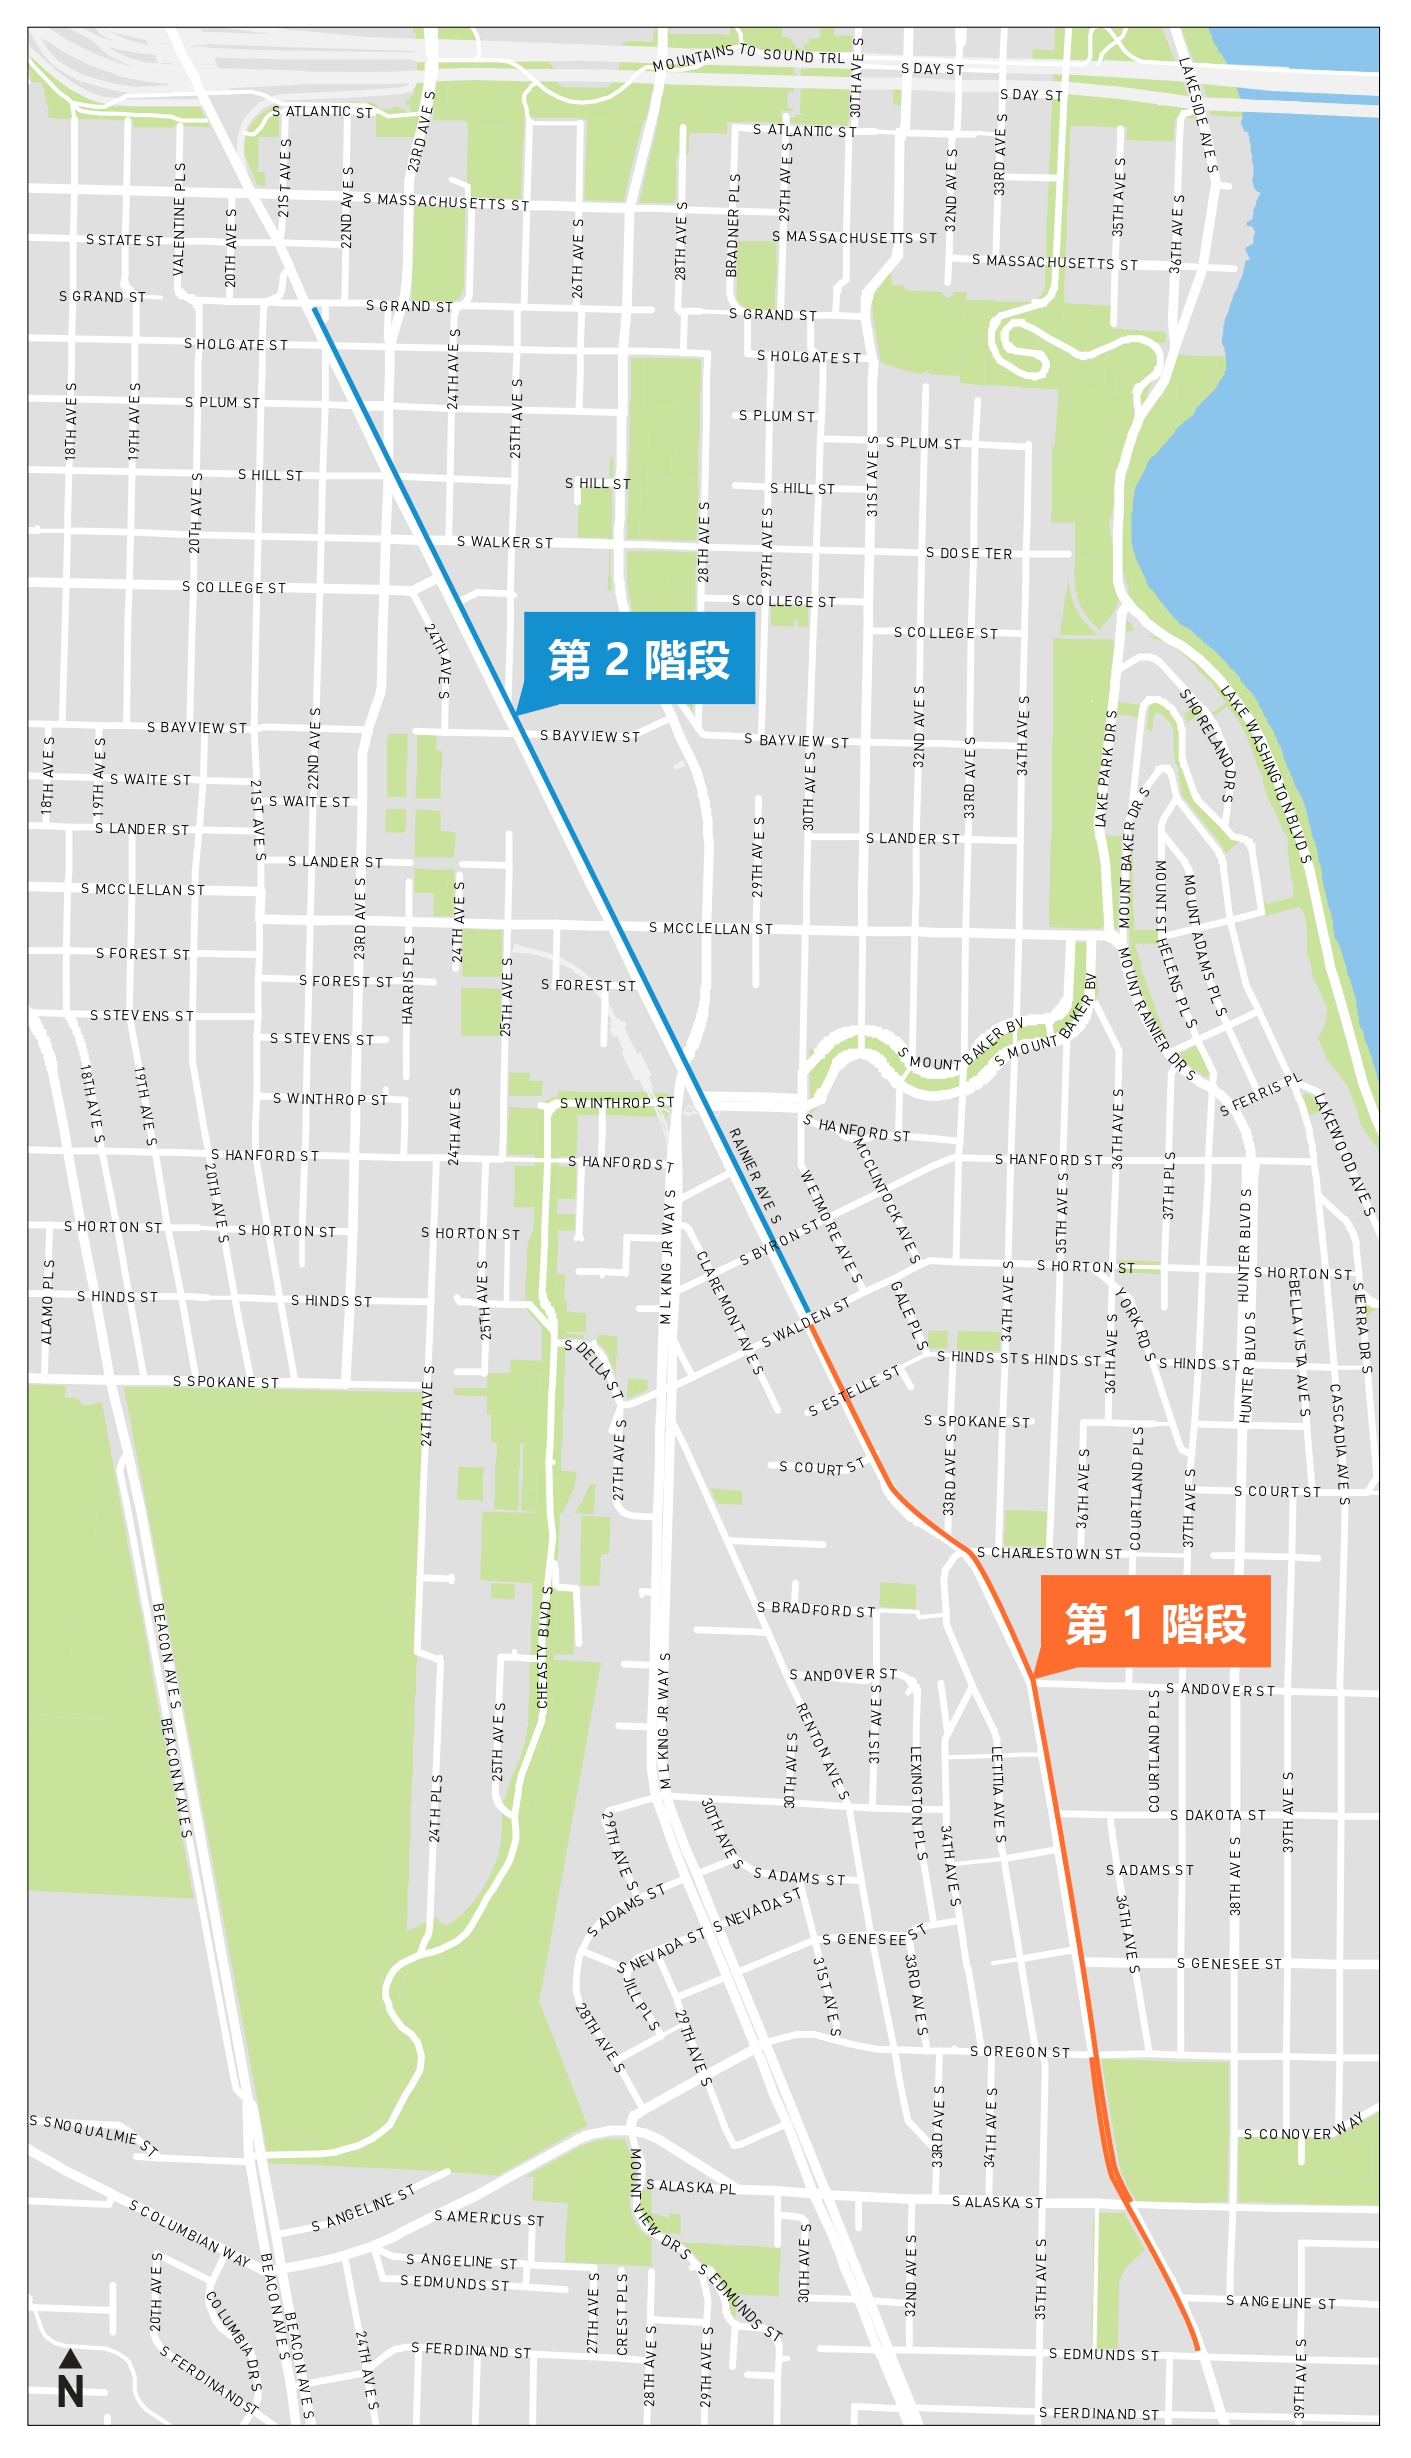 Rainier Ave S 公車專用道的項目區域地圖，第一階段和第二階段沿 Rainier Ave S 上行標示。